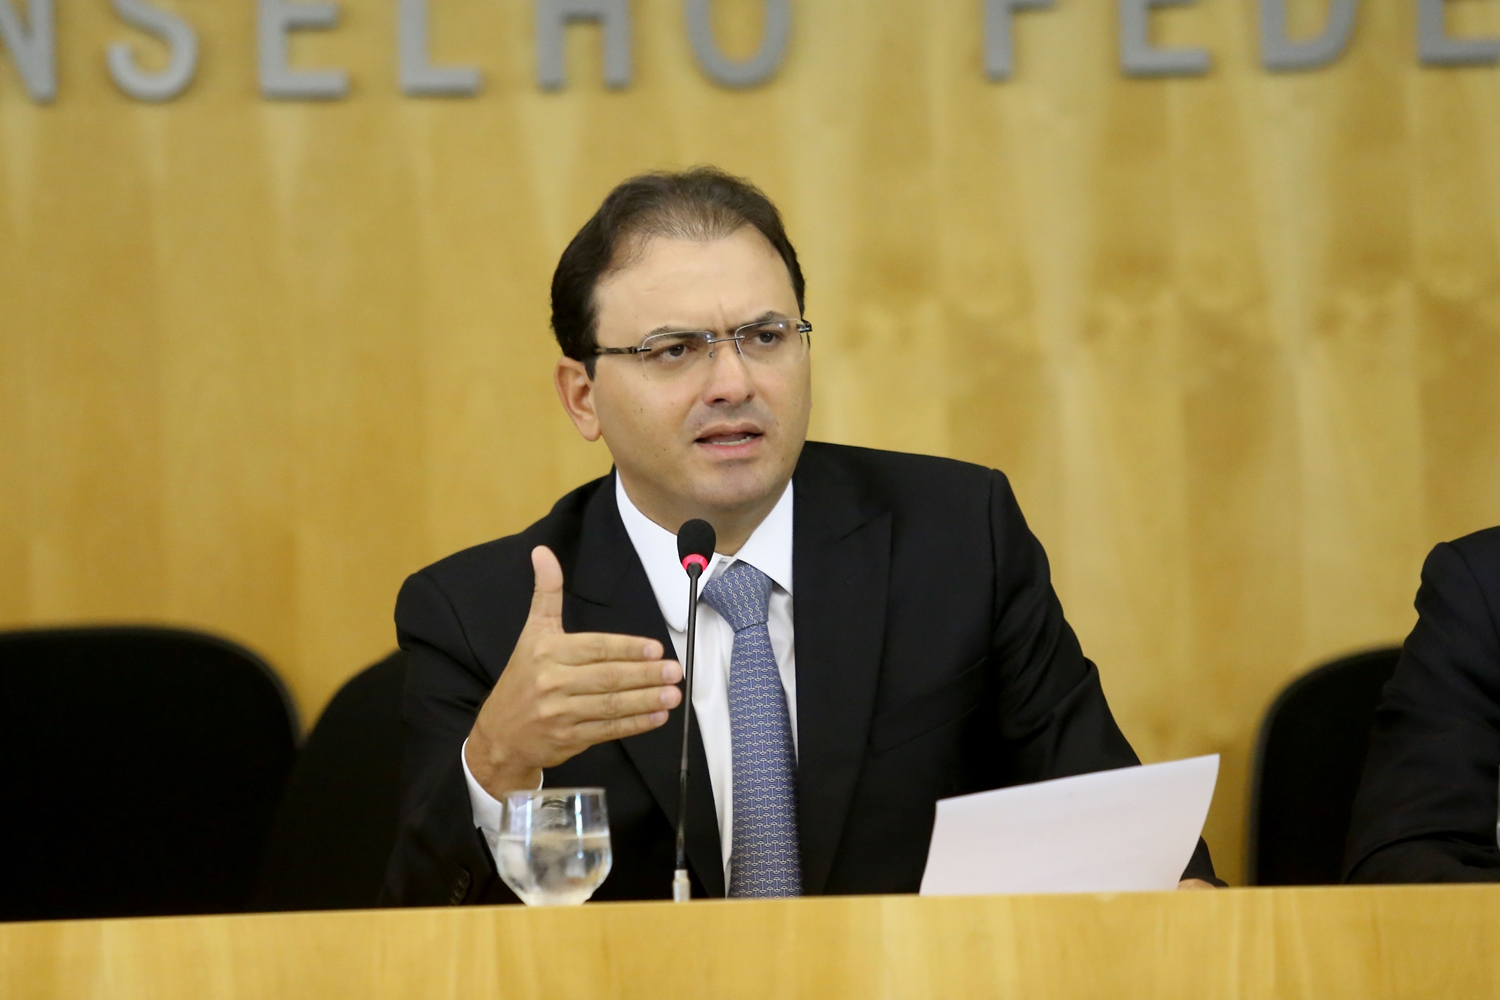 Advogado Marcus Vinicius Furtado Coelho